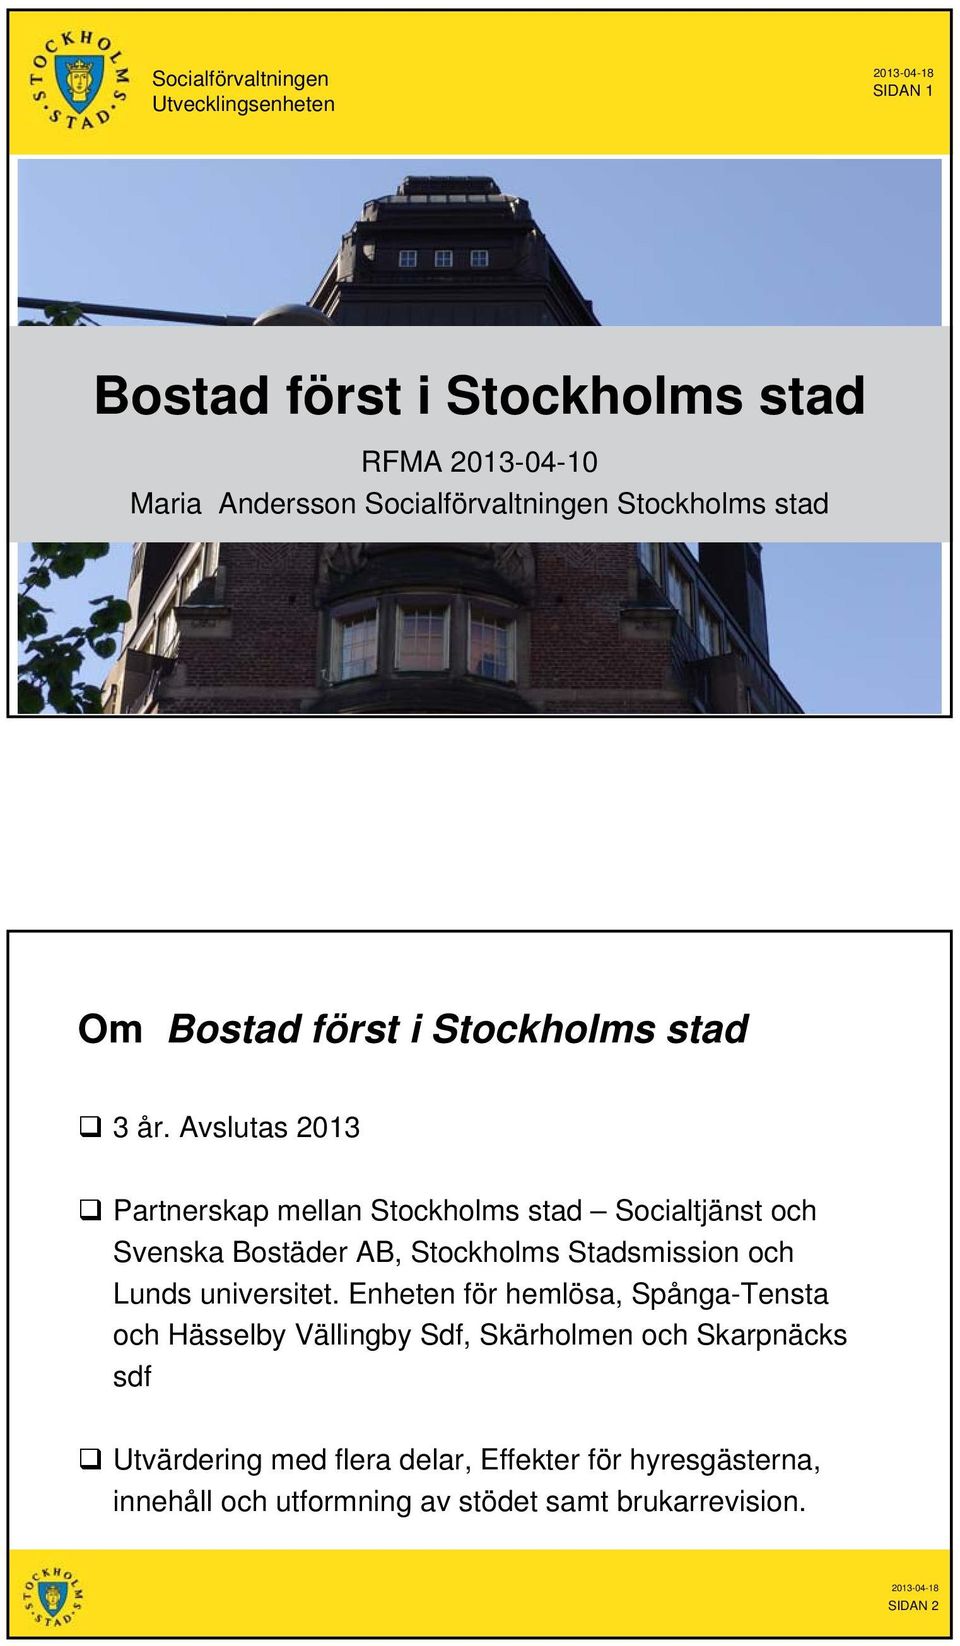 Avslutas 2013 Partnerskap mellan Stockholms stad Socialtjänst och Svenska Bostäder AB, Stockholms Stadsmission och Lunds universitet.